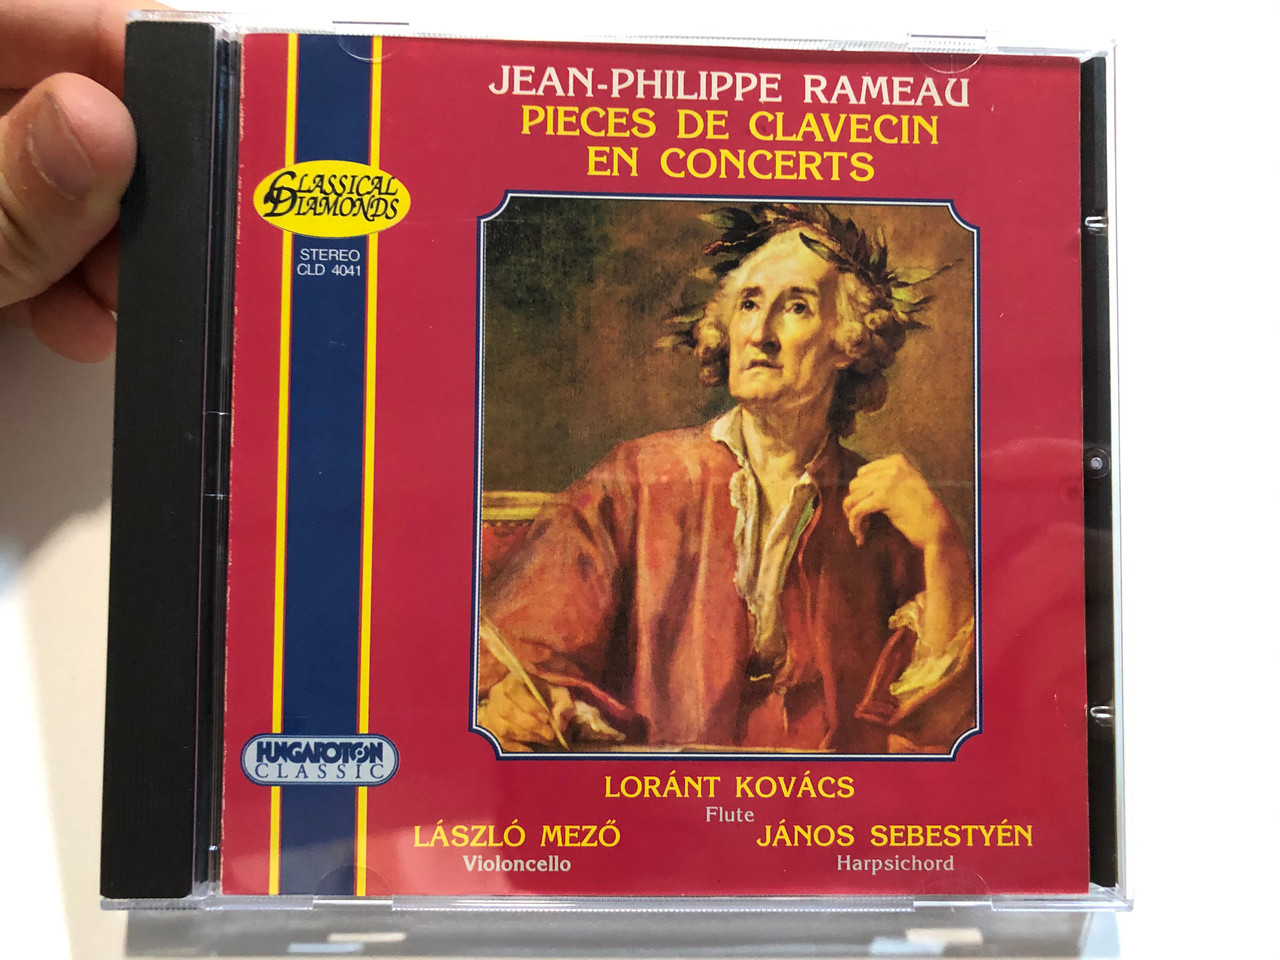 Jean-Philippe Rameau – Pieces De Clavecin En Concerts / Lóránt Kovács (flute),  László Mezö (violoncello), János Sebestyén (harpsichord) / Hungaroton  Classic Audio CD 1999 Stereo / CLD 4041 - bibleinmylanguage